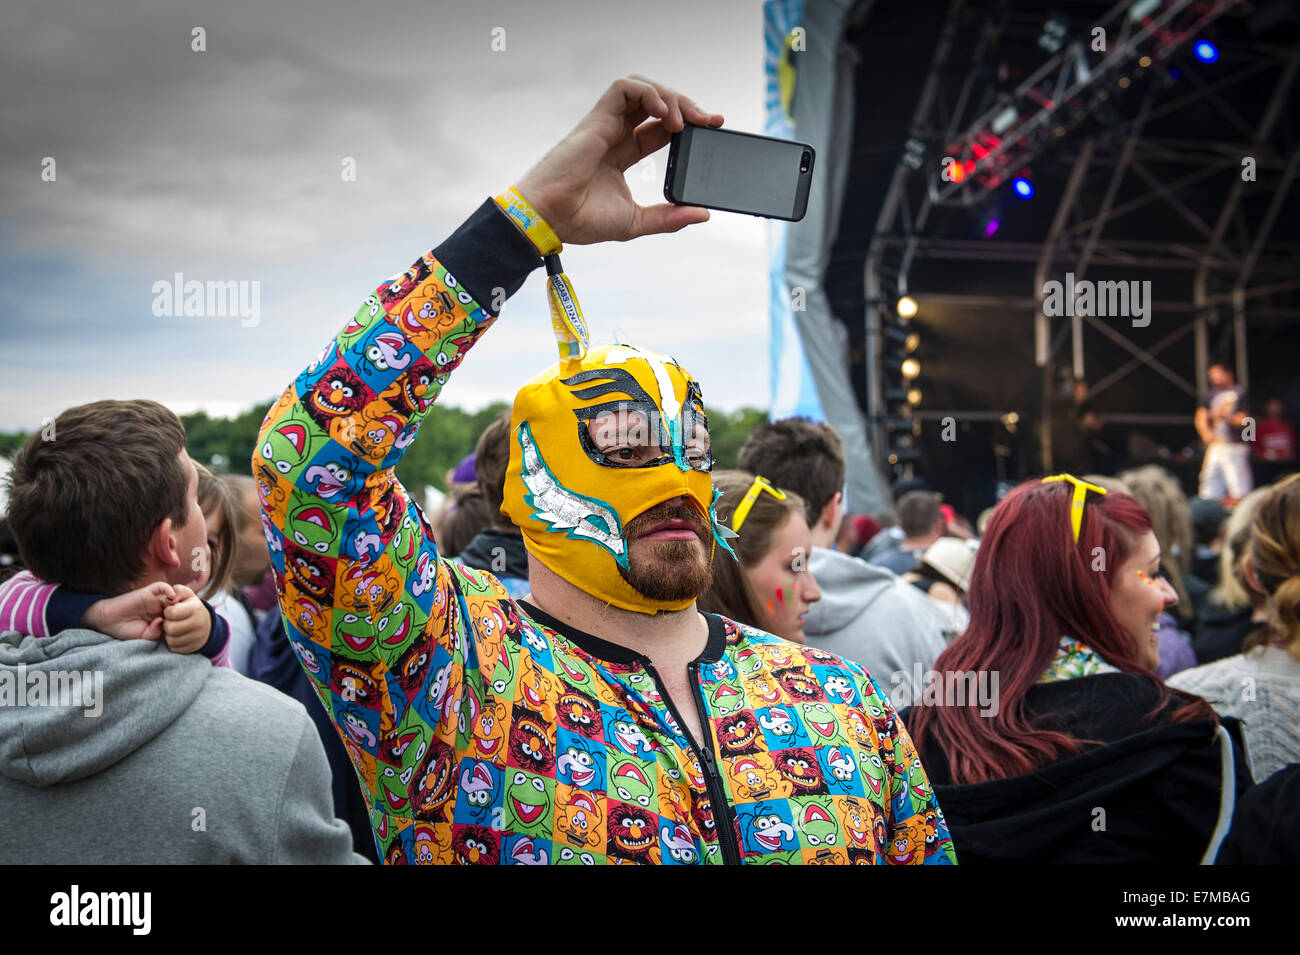 Un festivalgoer indossa una maschera Luchador presso il Festival Brownstock in Essex. Foto Stock